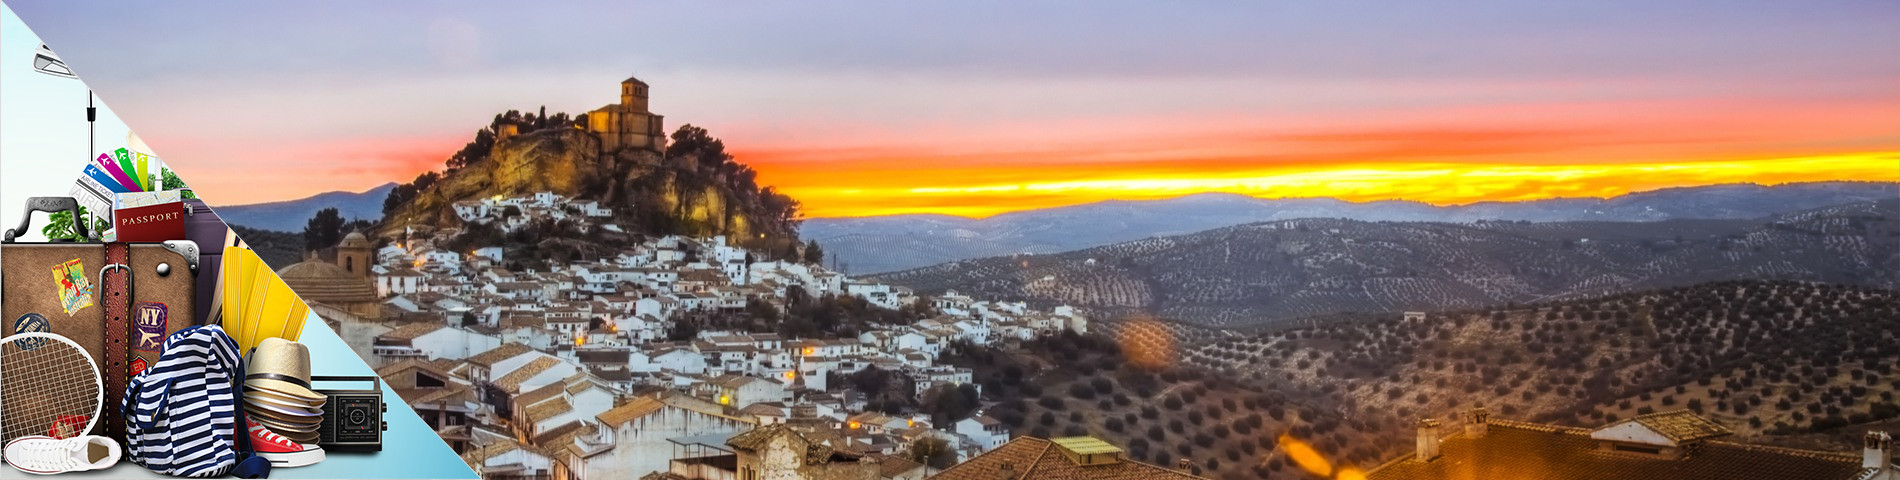 Granada - Spansk for Turisme